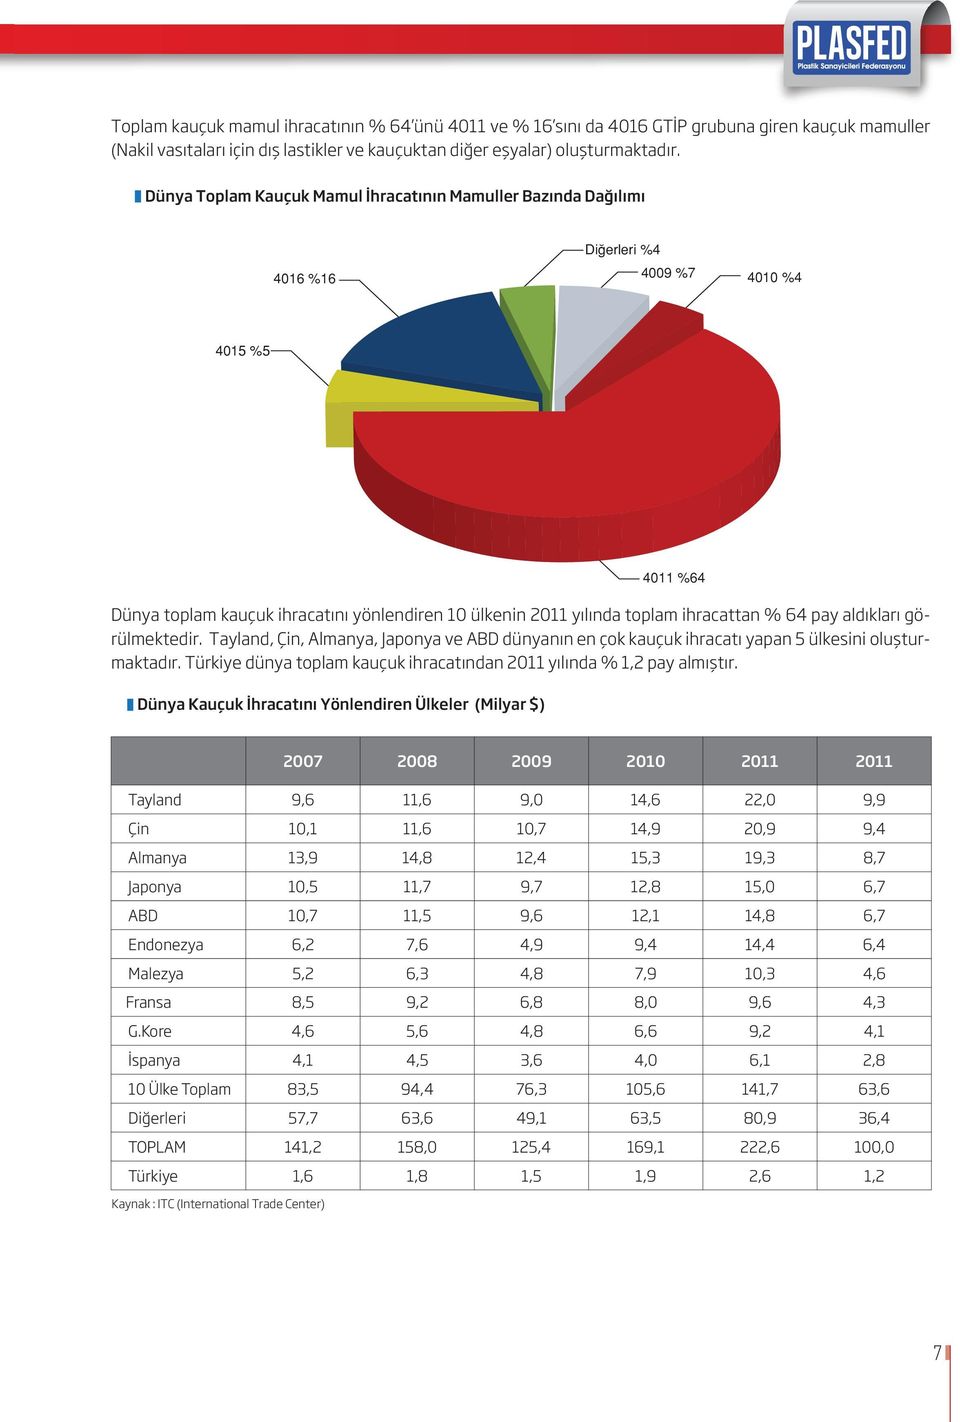 Tayland, Çin, Almanya, Japonya ve ABD dünyanın en çok kauçuk ihracatı yapan 5 ülkesini oluşturmaktadır. Türkiye dünya toplam kauçuk ihracatından 2011 yılında % 1,2 pay almıştır.